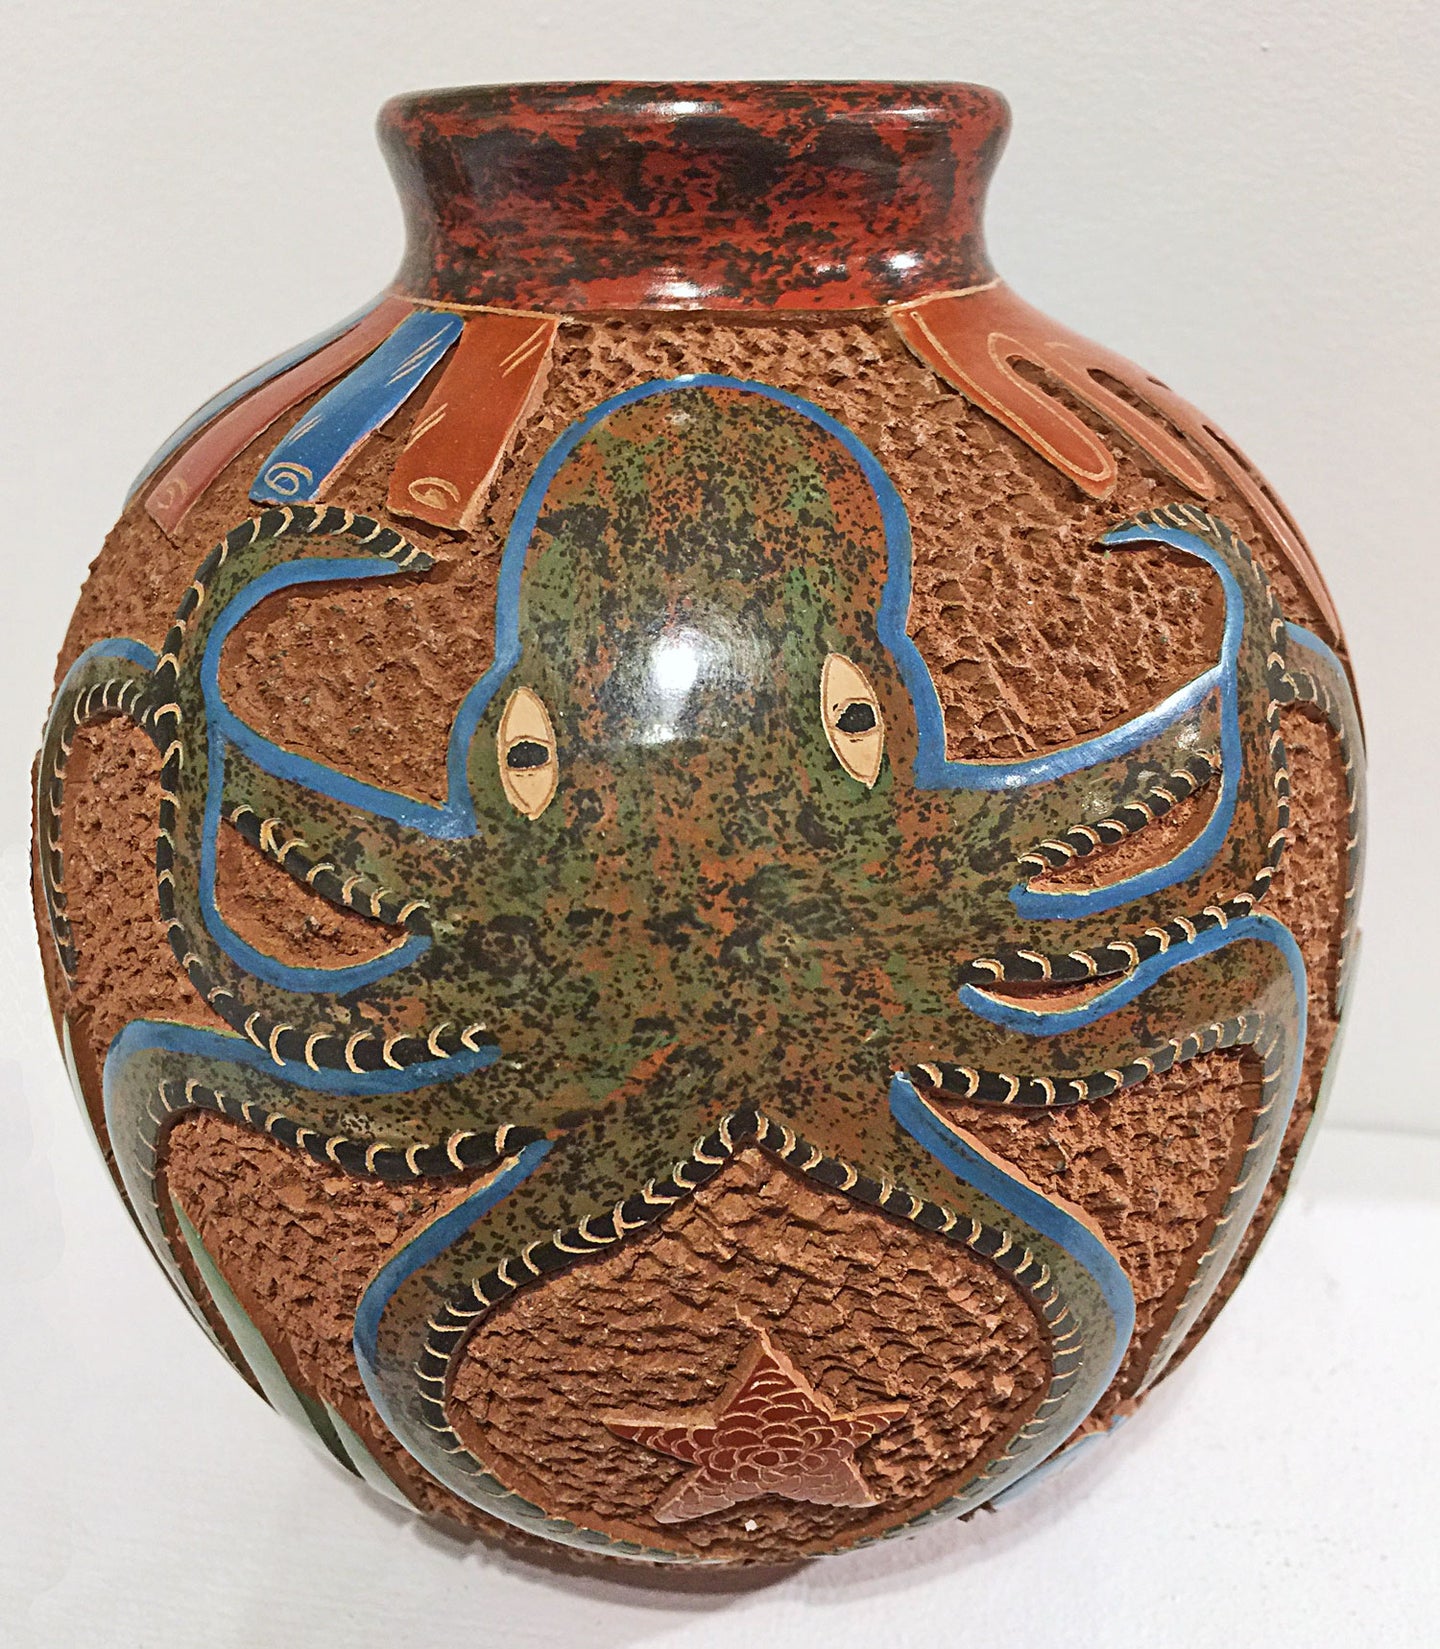 mundo handmade nicaraguan pottery- octopus animal pot